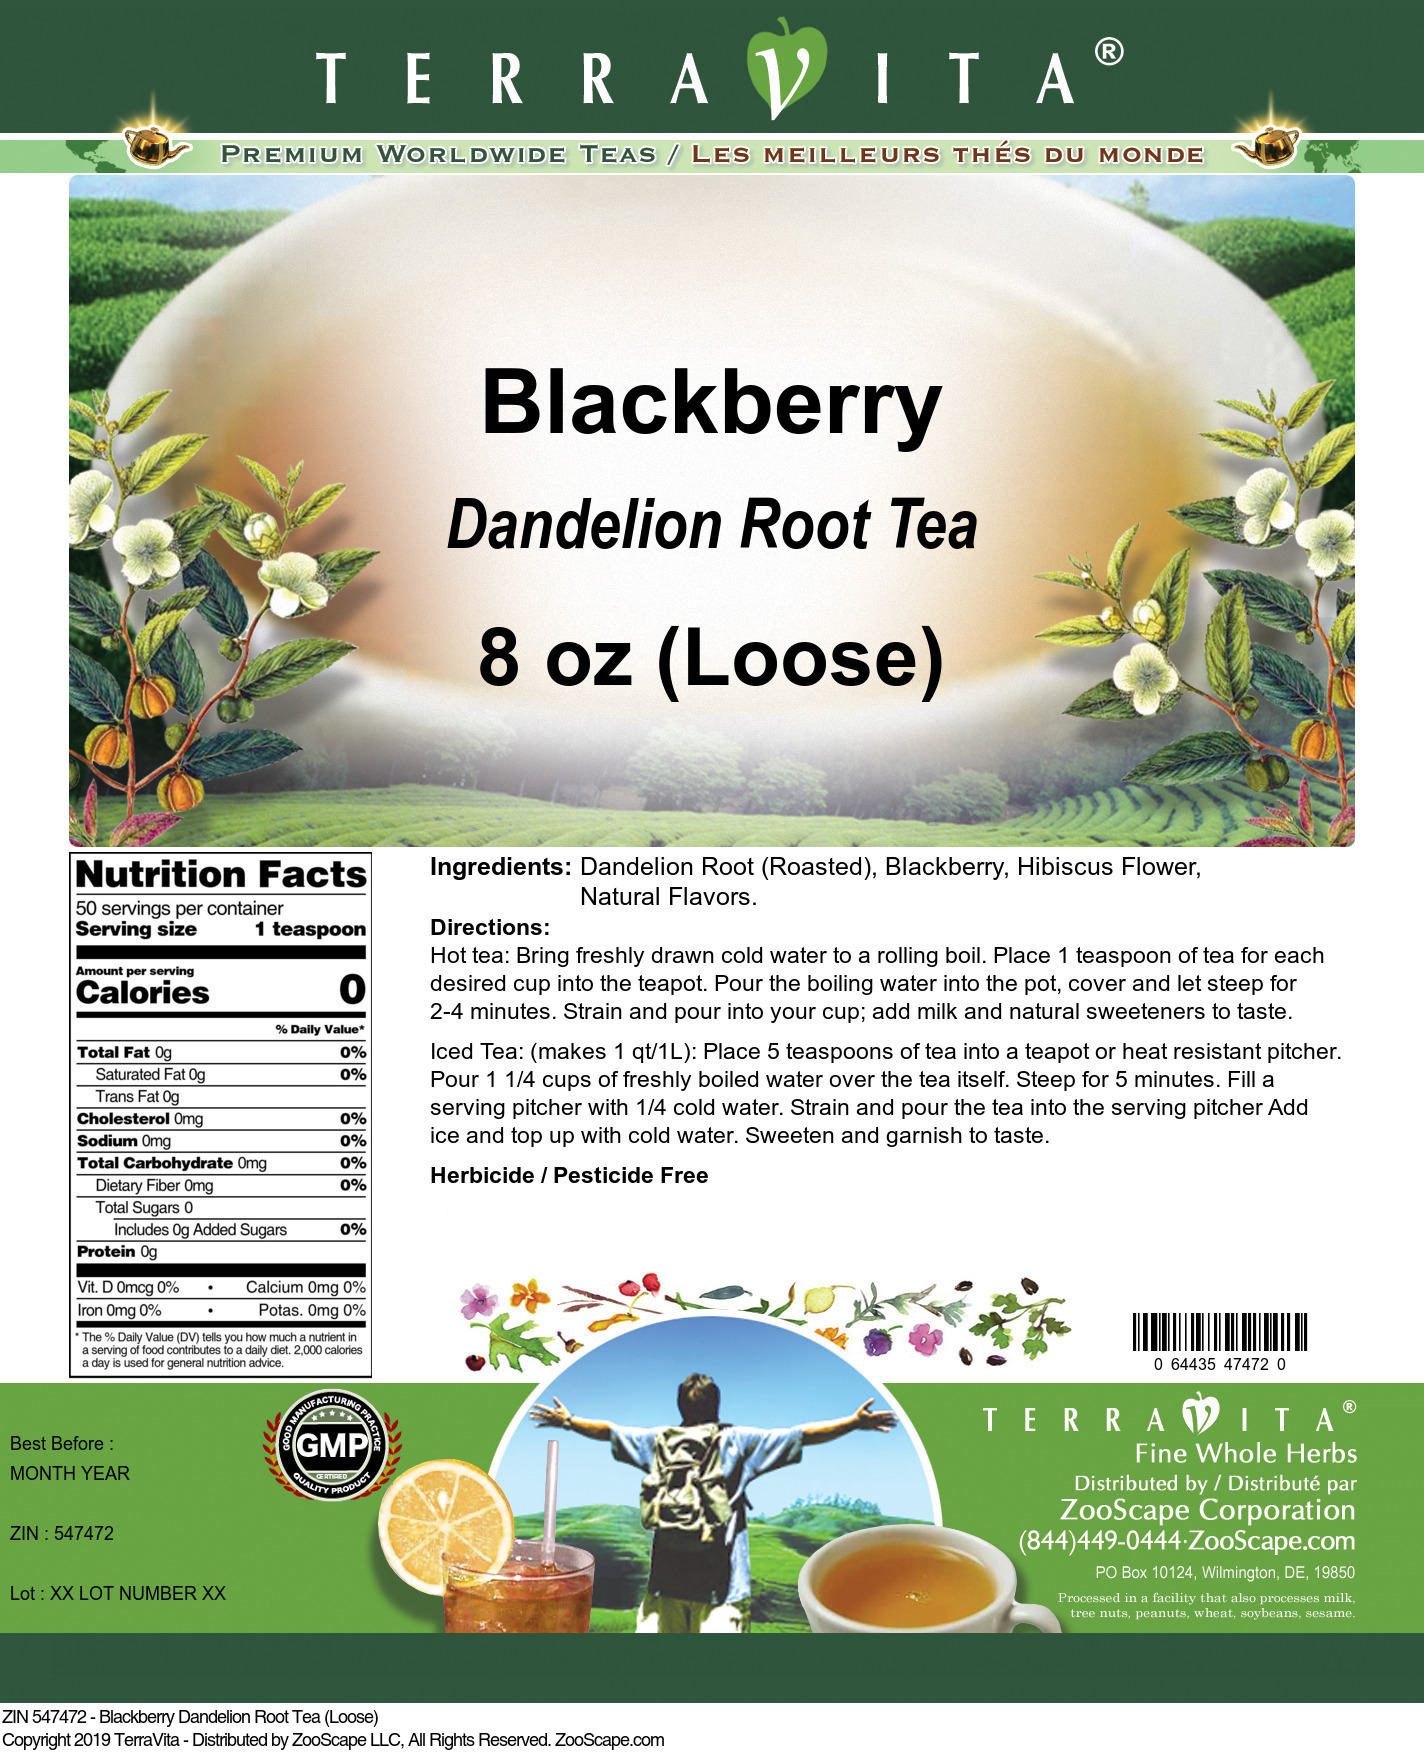 Blackberry Dandelion Root Tea (Loose) - Label